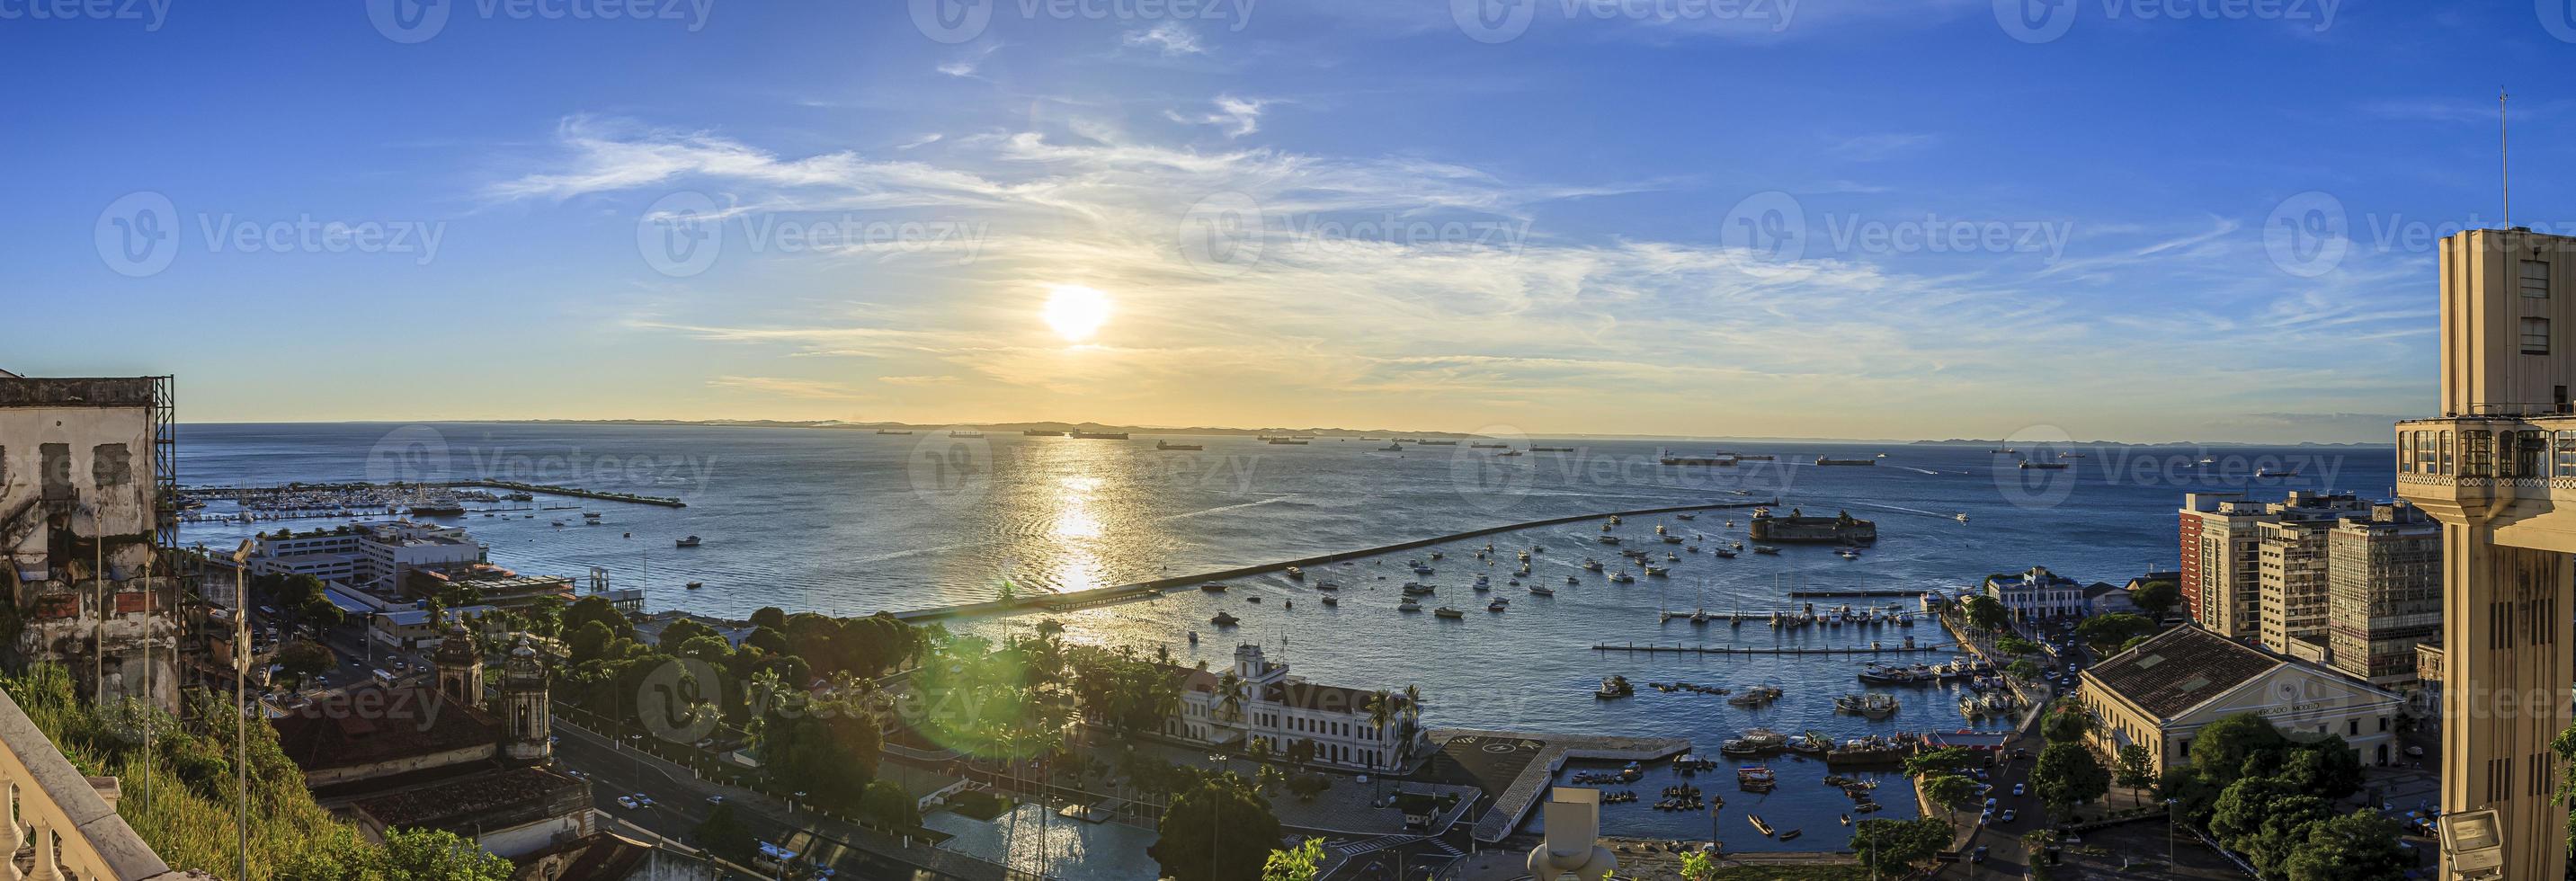 panoramisch beeld van de haven van de braziliaans stad van Salvador de Bahia foto